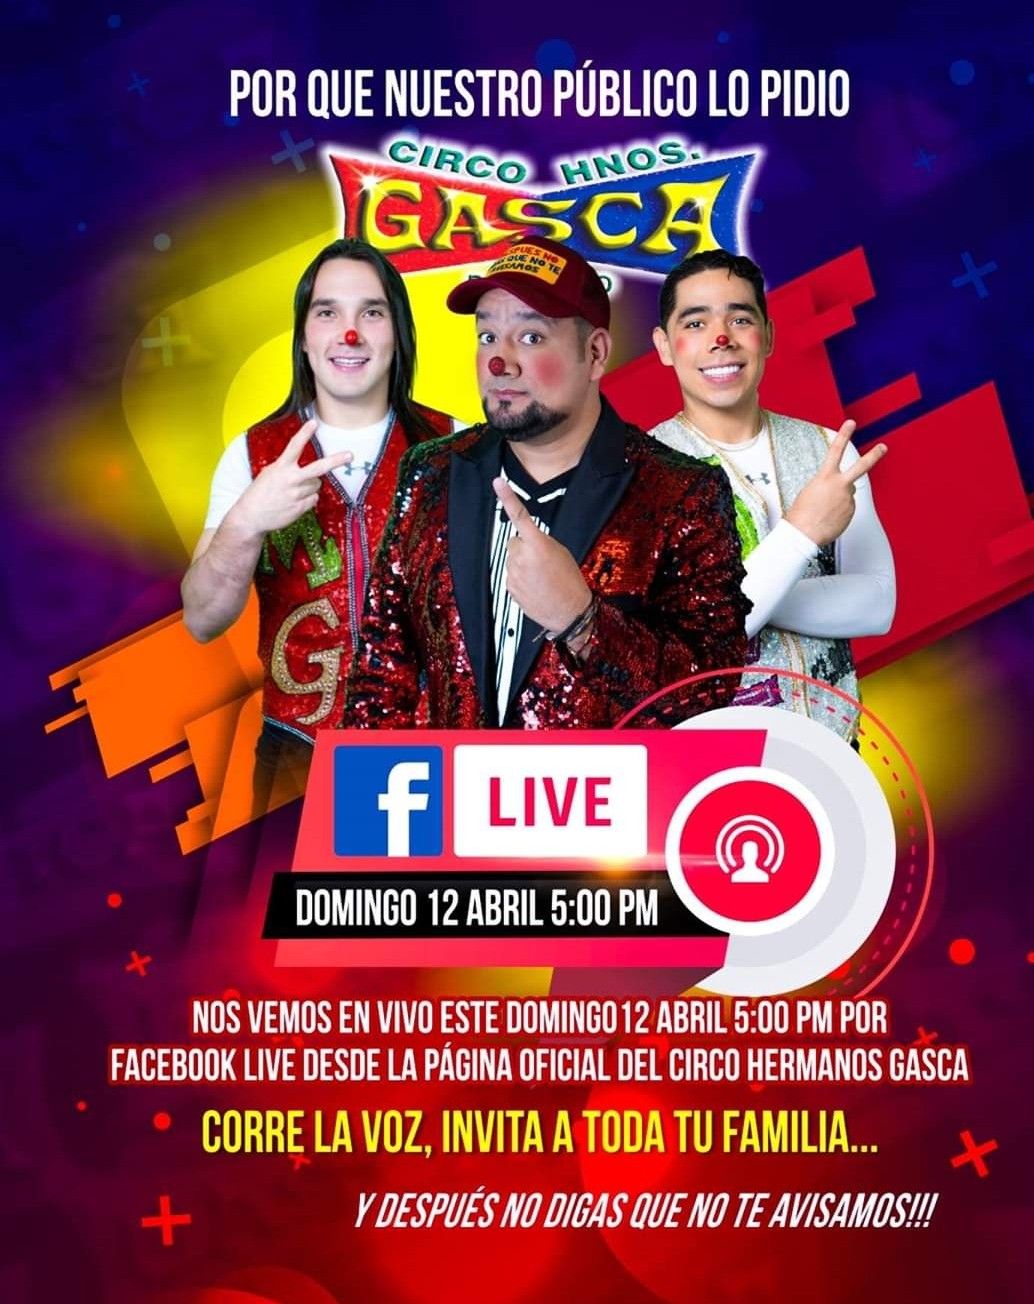 
Circo Hermanos Gasca función gratis  facebook live hoy Domingo 12 abril. 